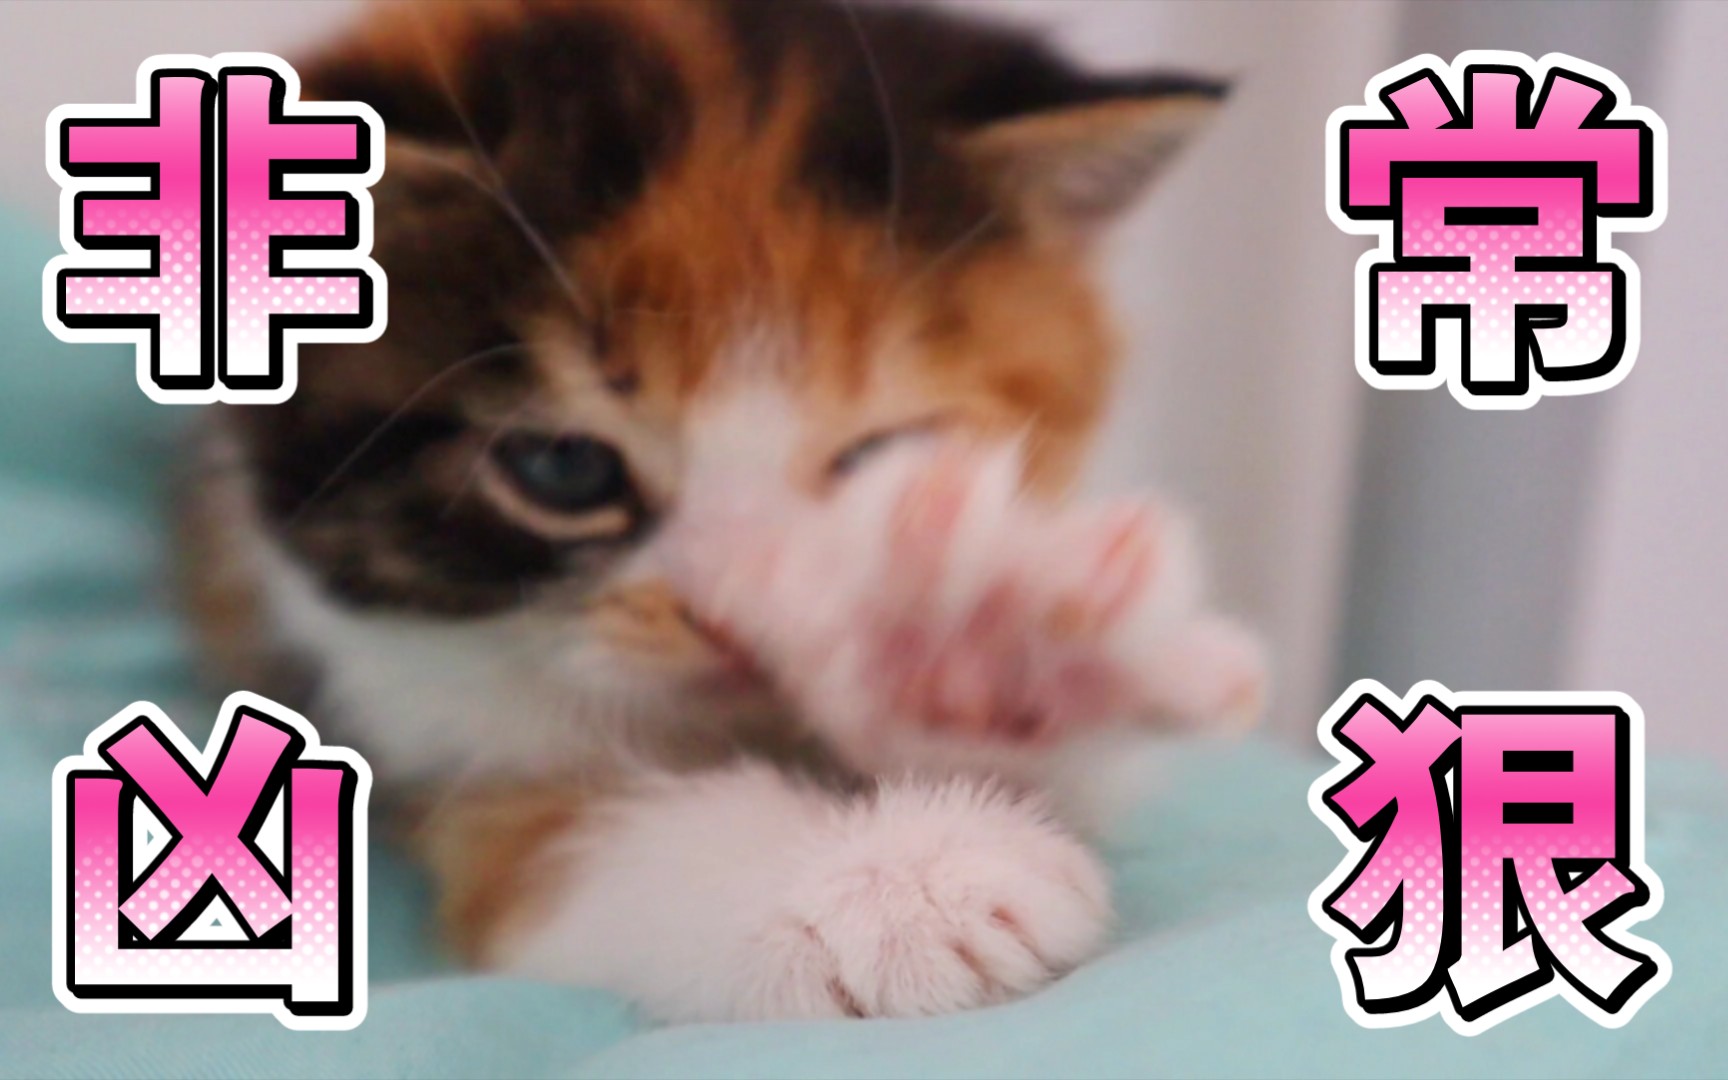 挑战3秒激怒一只猫【超凶】-猫顿庄园-猫顿庄园-哔哩哔哩视频